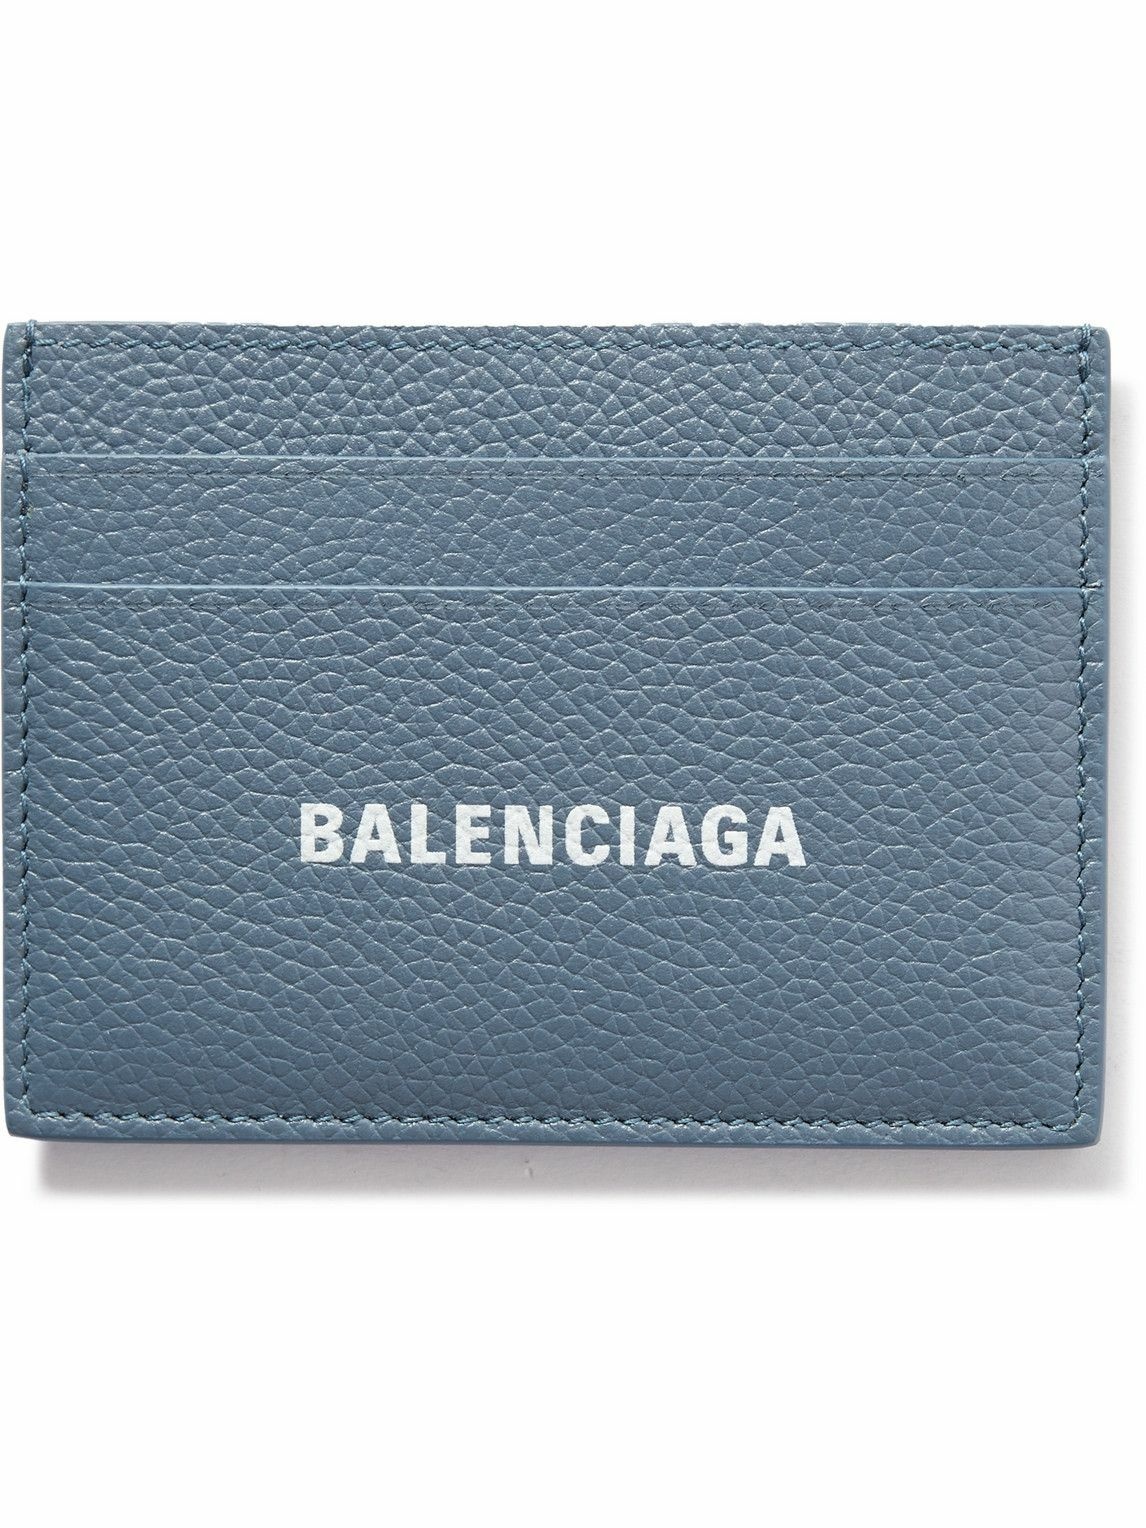 Balenciaga - Logo-Print Full-Grain Leather Cardholder Balenciaga